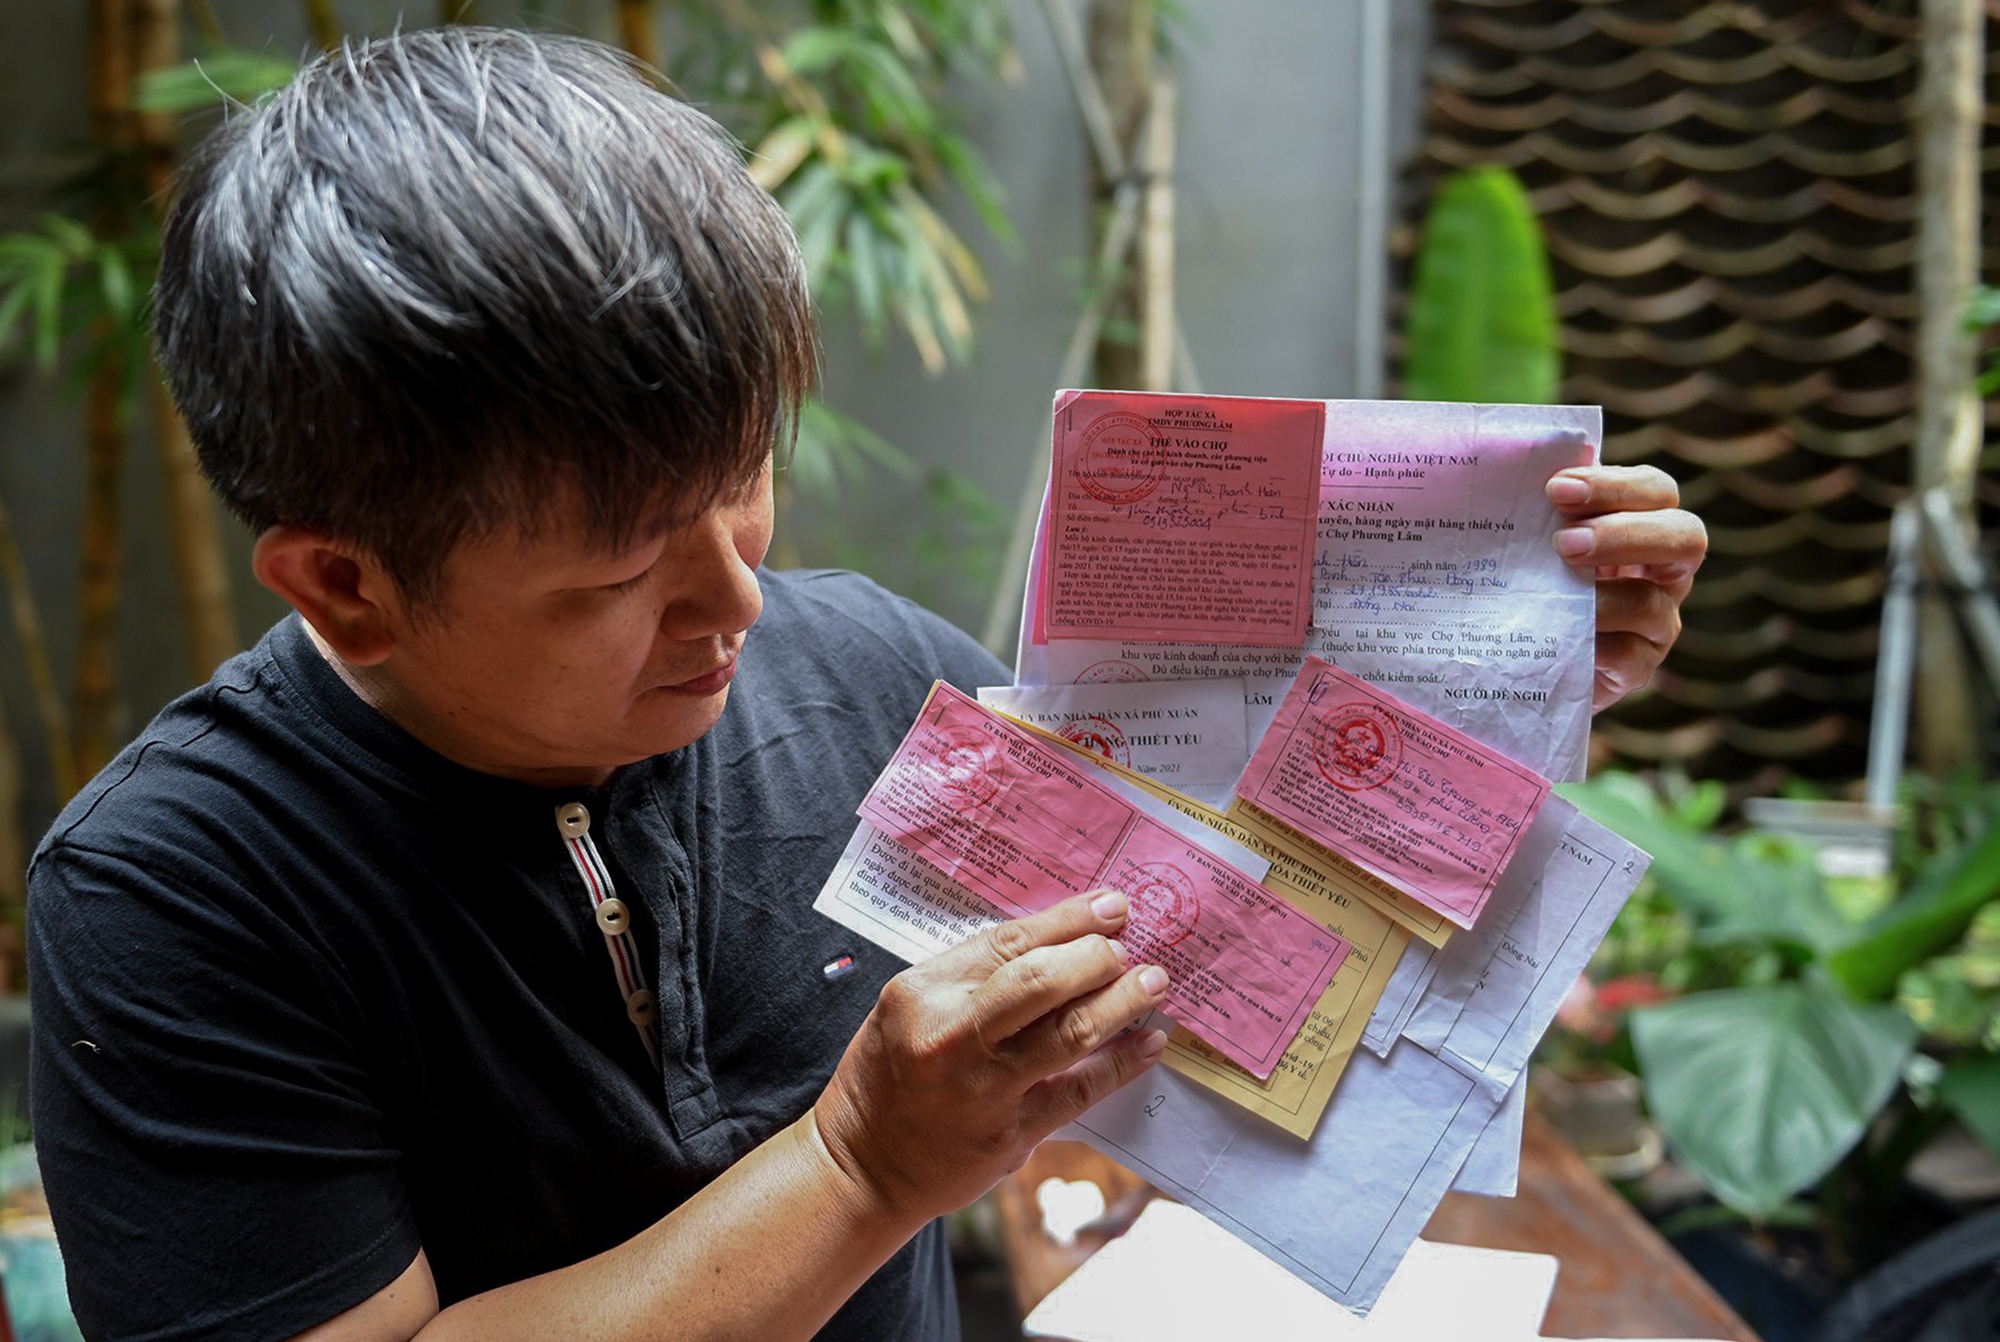 Thời gian qua, ông Huỳnh Minh Hiệp (49 tuổi, ngụ quận Phú Nhuận, TP.HCM) sưu tập và lưu giữ gần 500 phiếu đi chợ, giấy tờ, hiện vật liên quan đến dịch COVID-19 tại TP.HCM cùng các tỉnh thành trên cả nước.